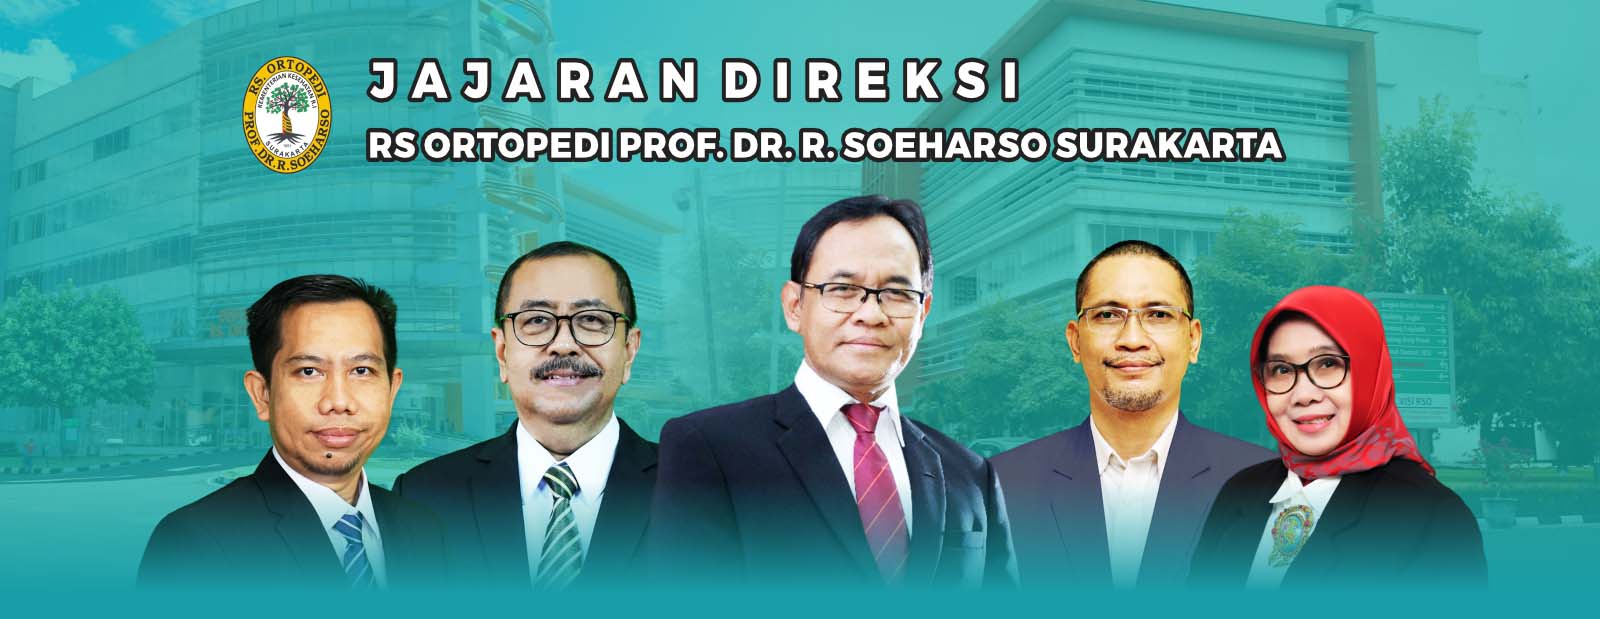 e-Diklat Rumah Sakit Ortopedi Prof. Dr. R. Soeharso Surakarta Header 1